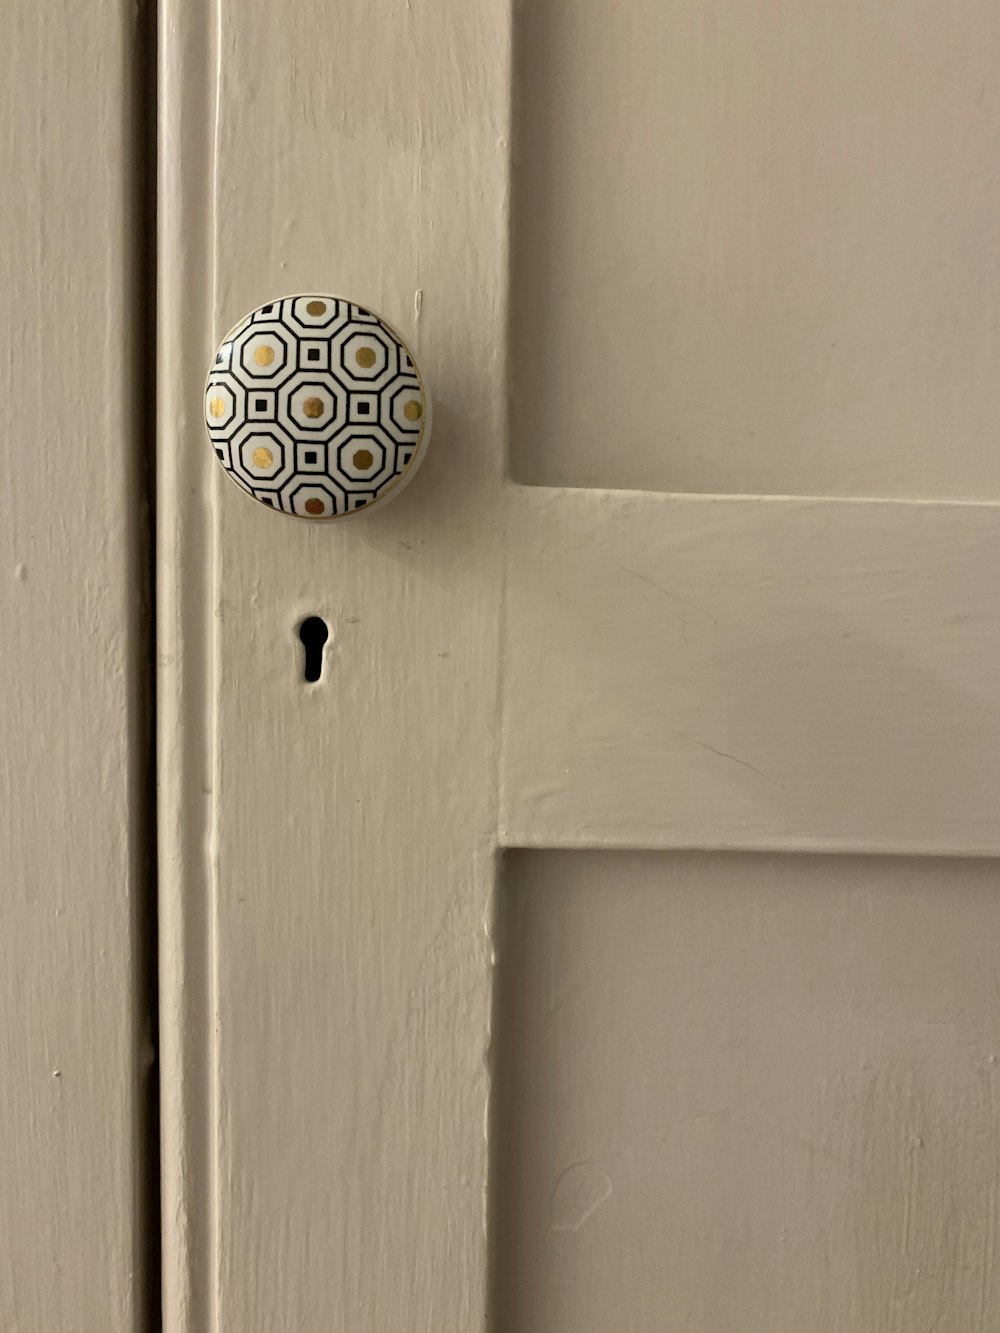 a door knob on a wall